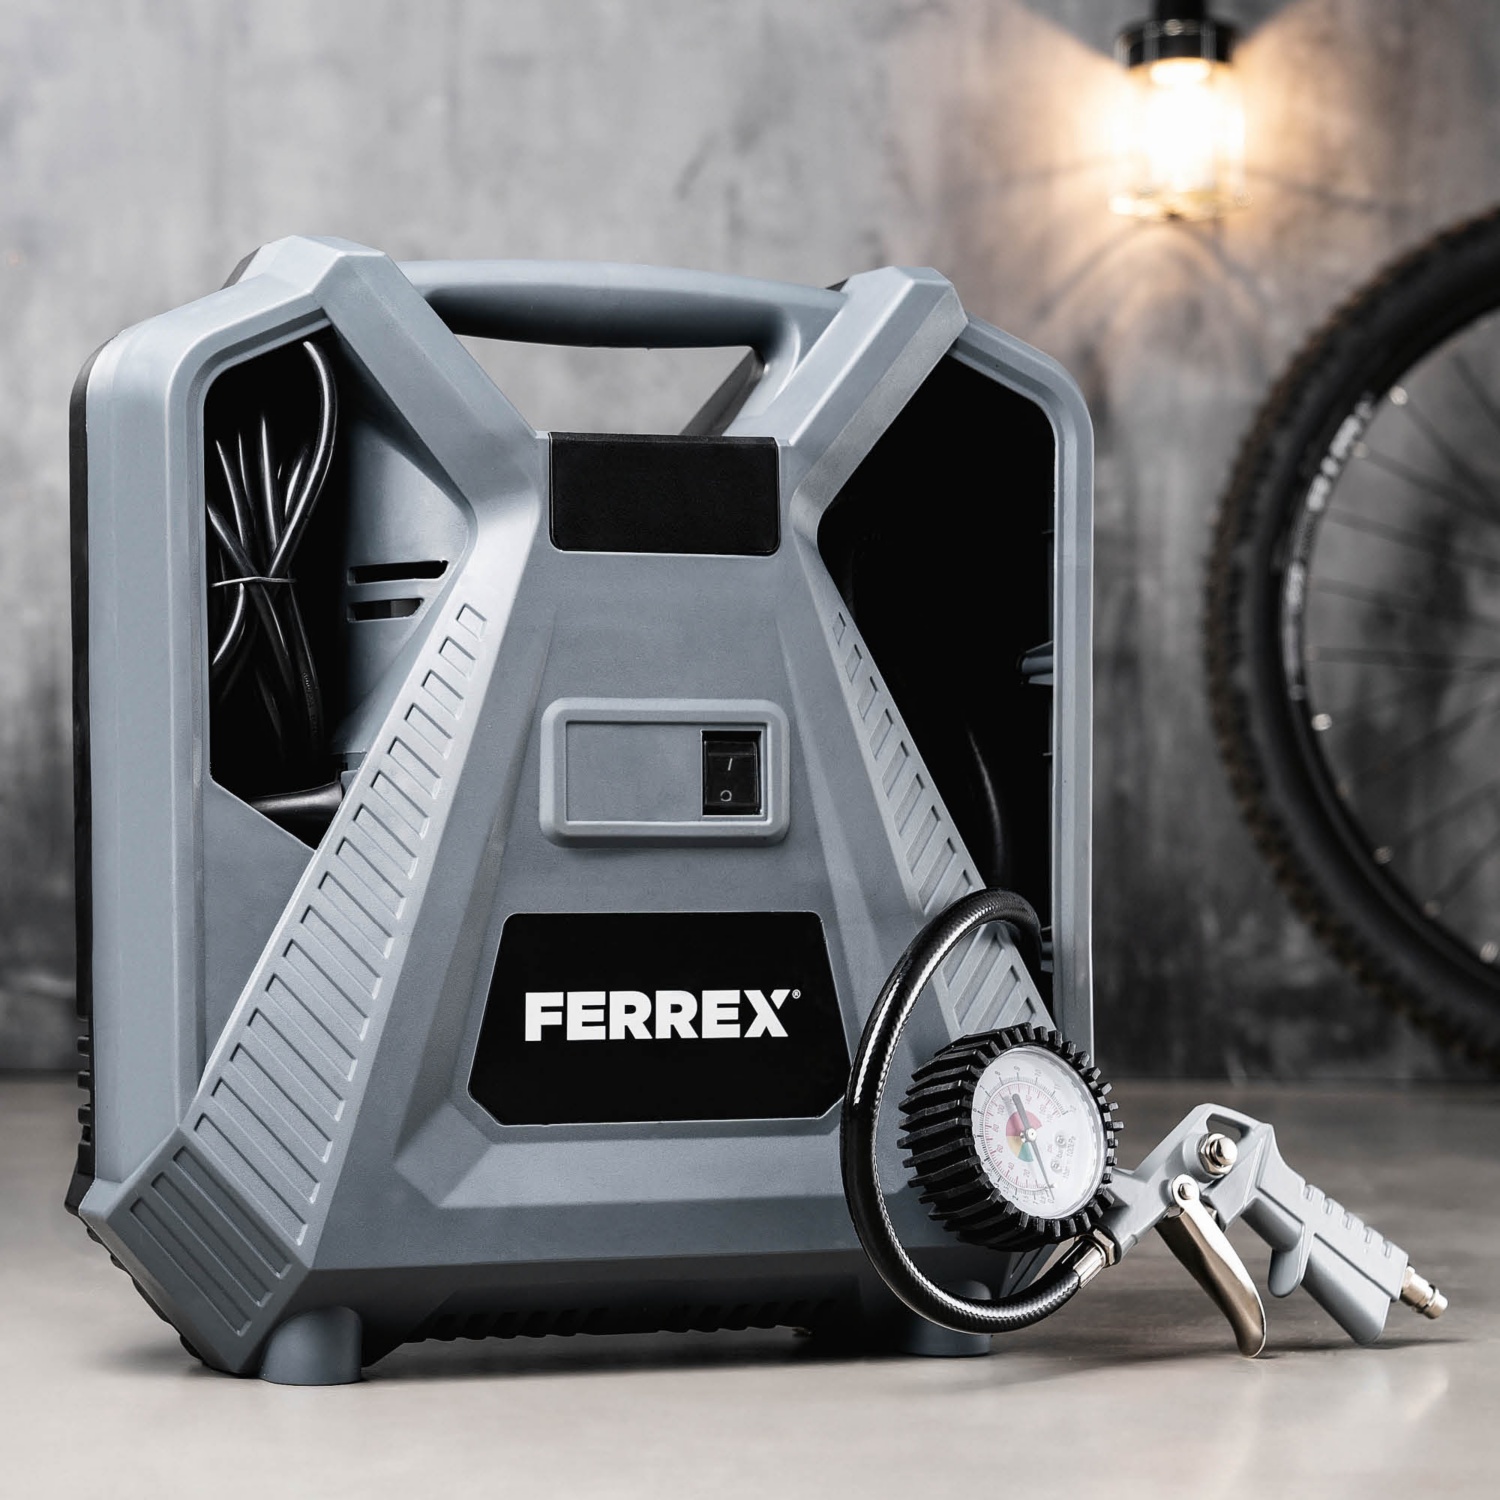 FERREX Hordozható kompresszor